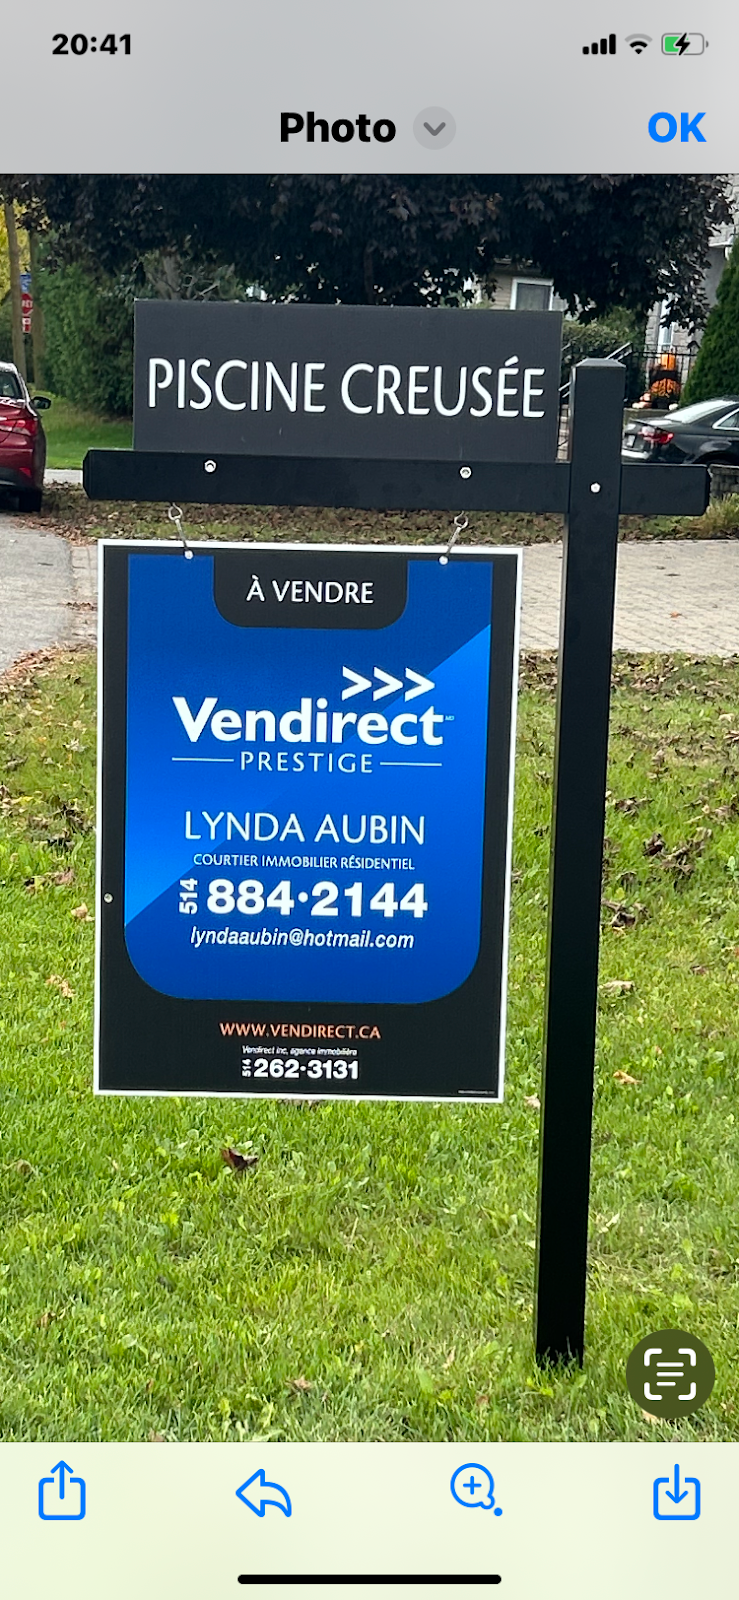 Lynda Aubin courtier immobilier Inc. Vendirect | 352 Rue Carmelle, Bois-des-Filion, QC J6Z 3T9, Canada | Phone: (514) 884-2144